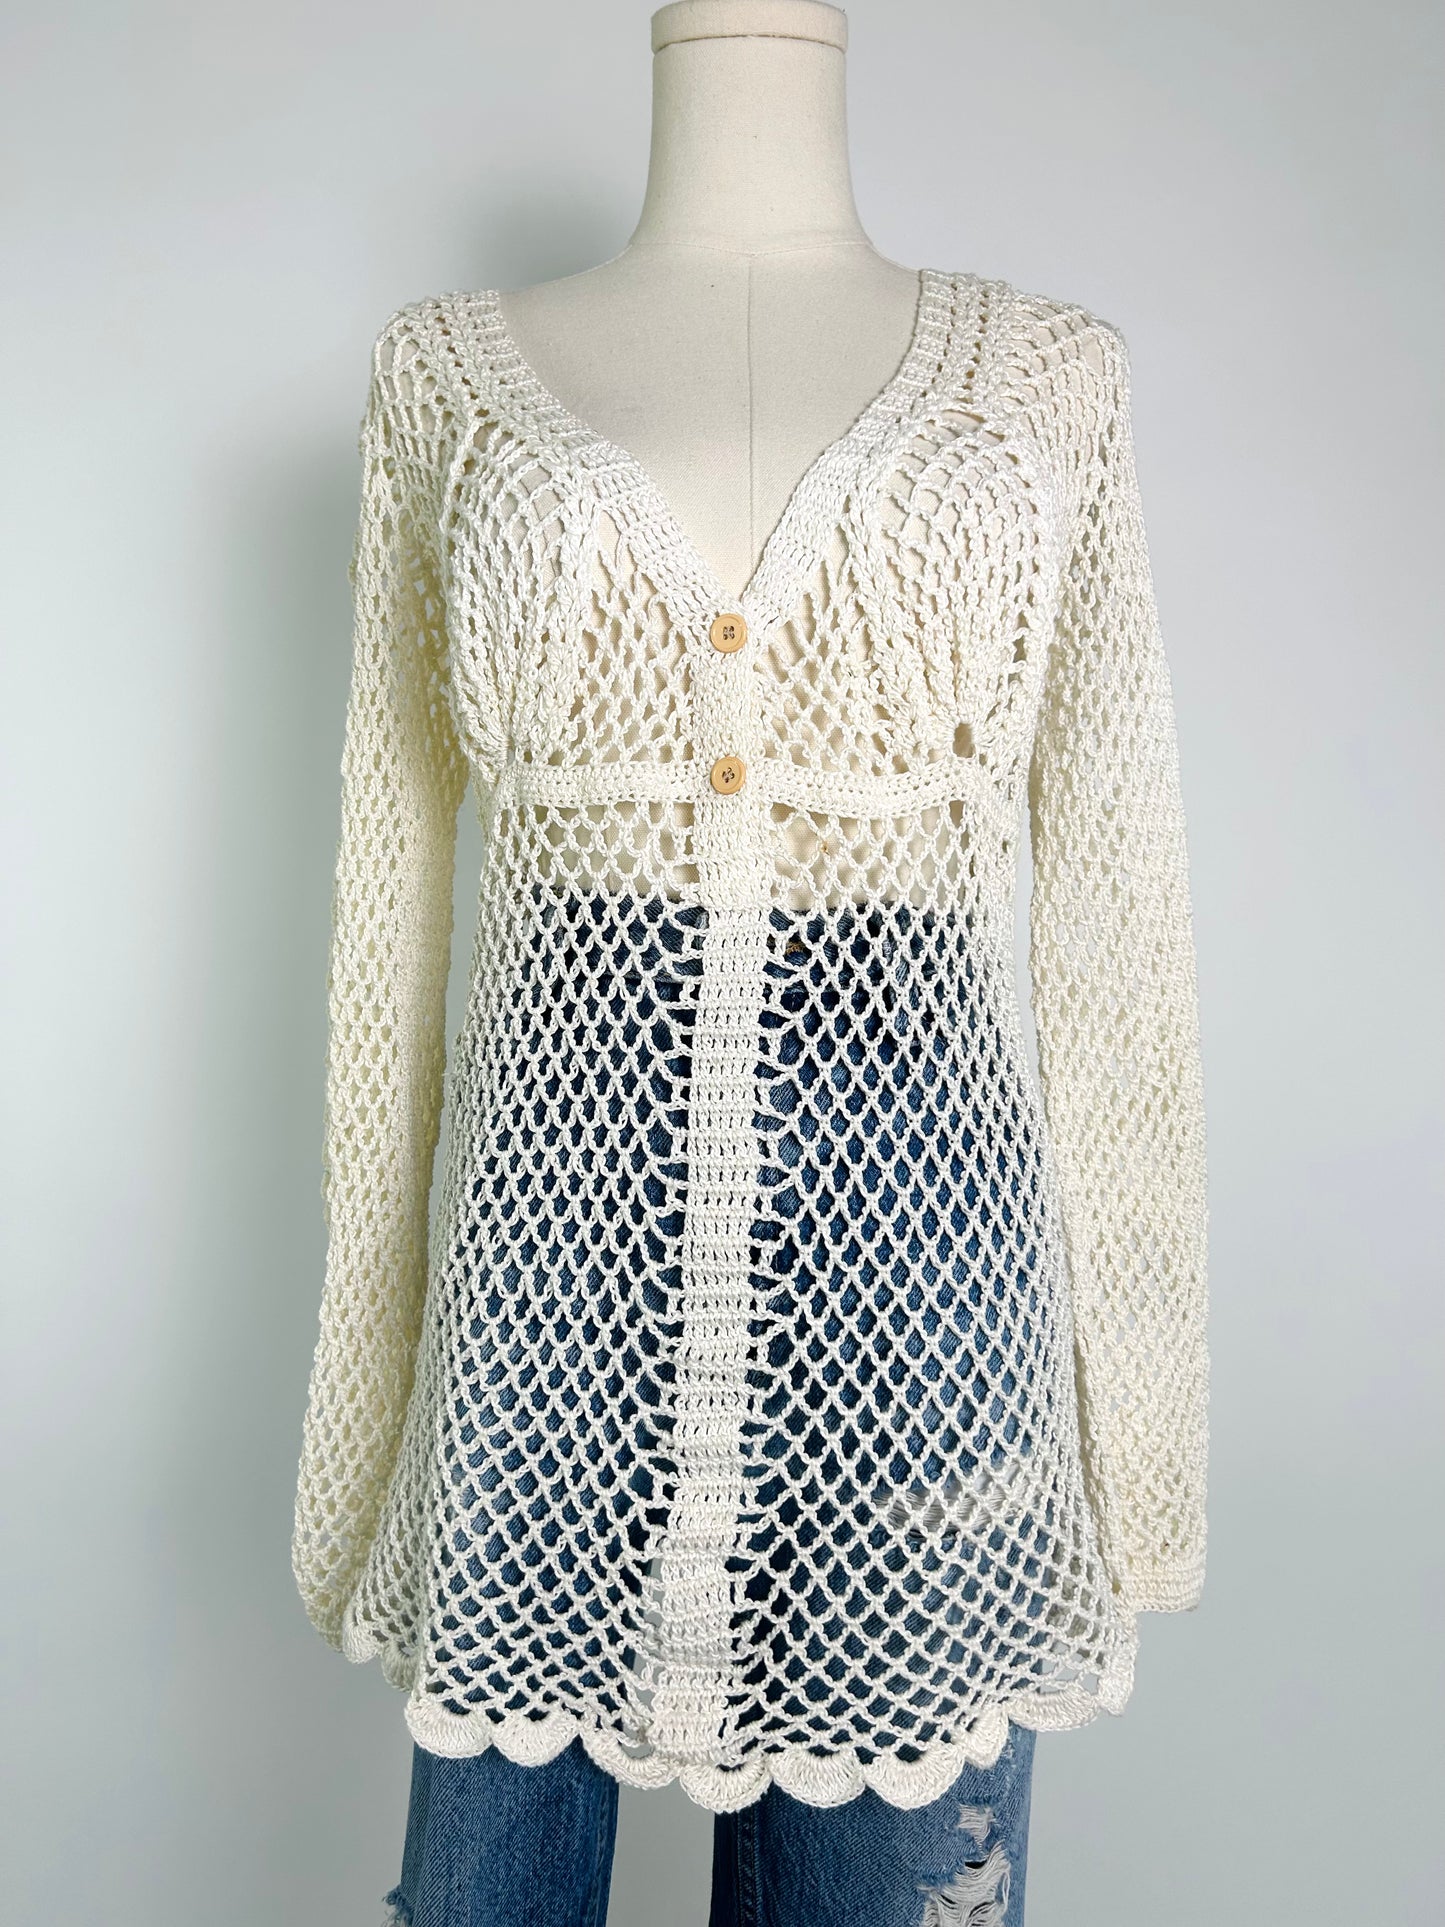 Vintage Crochet 70s Top